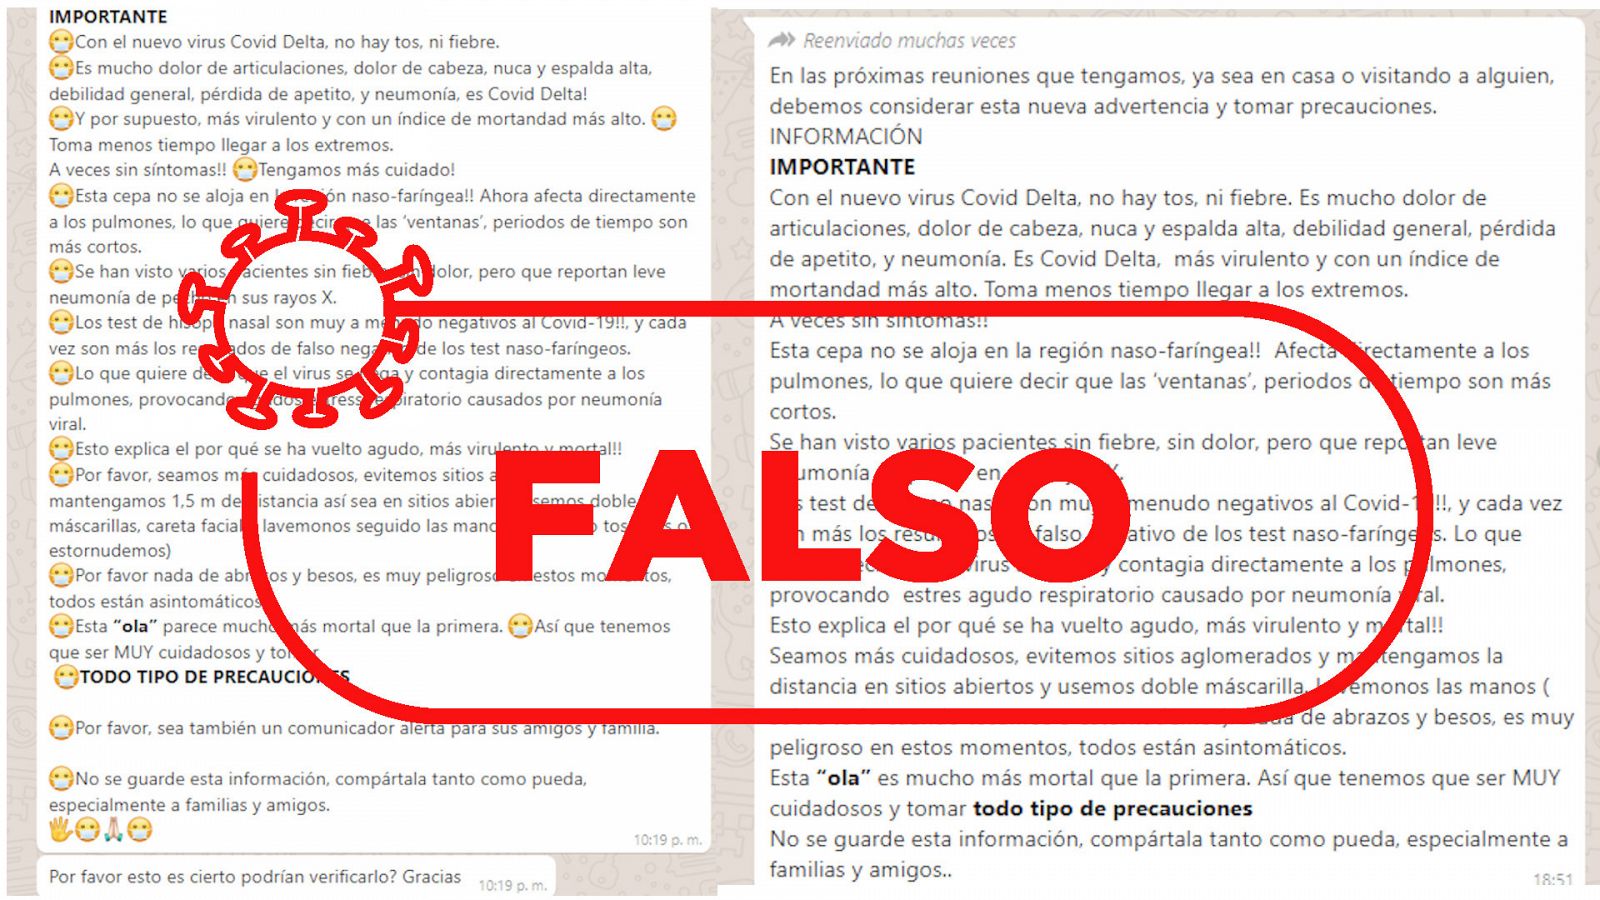  Dos ejemplos de mensajes que circulan con información inexacta sobre síntomas de la variante Delta (con sello rojo de Falso).